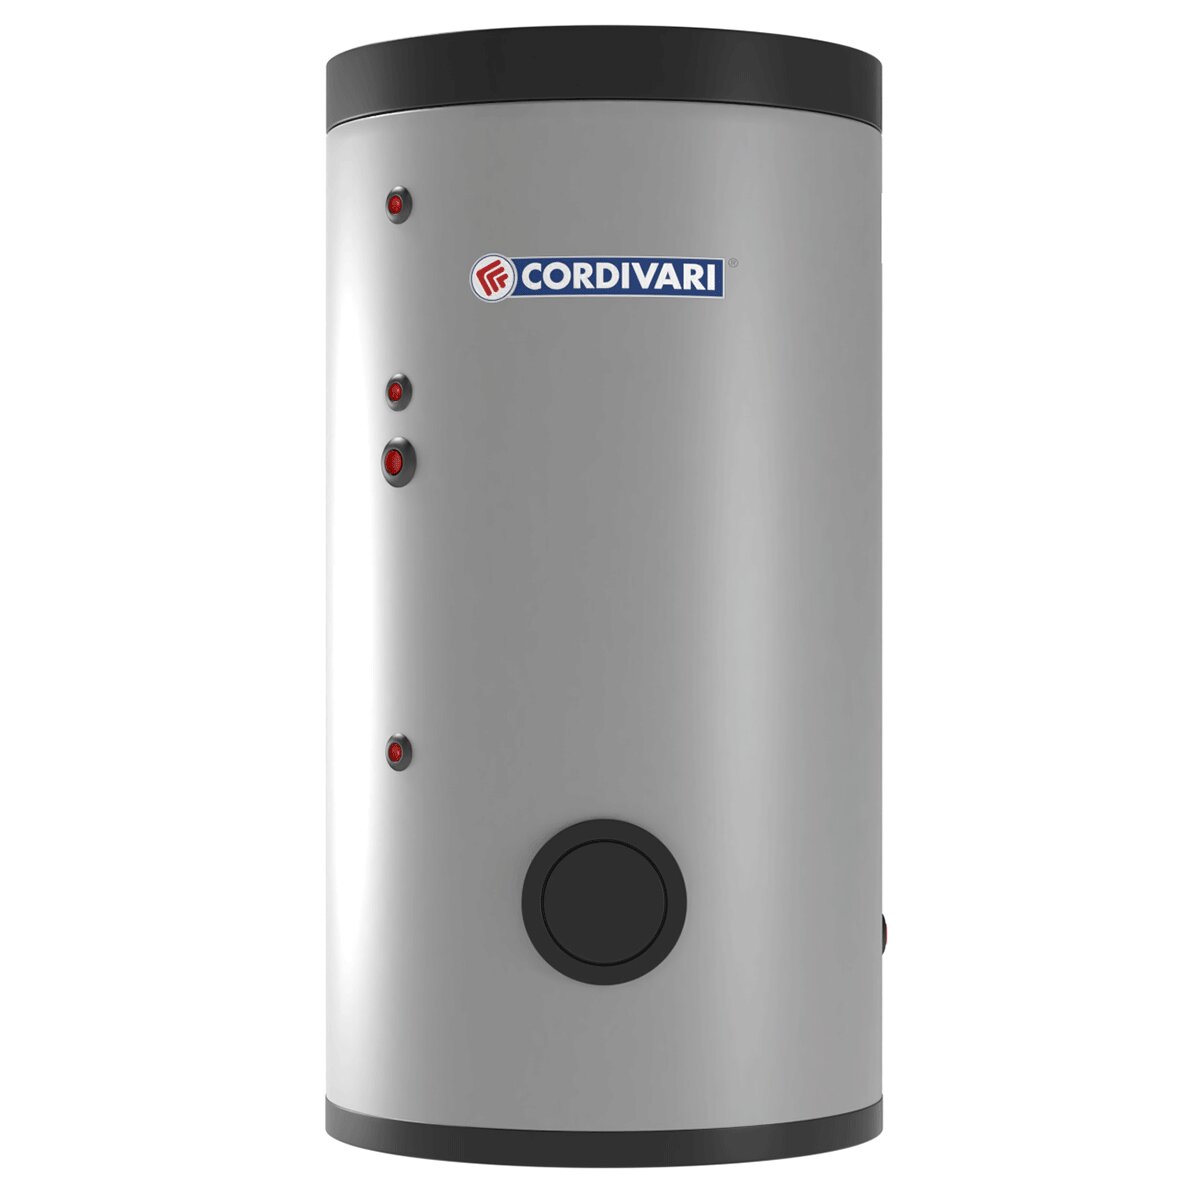 Cordivari BOLLY 2 ST FB WB Wasserkessel für sanitäres Warmwasser mit 2 festen Wärmetauschern 500 Liter